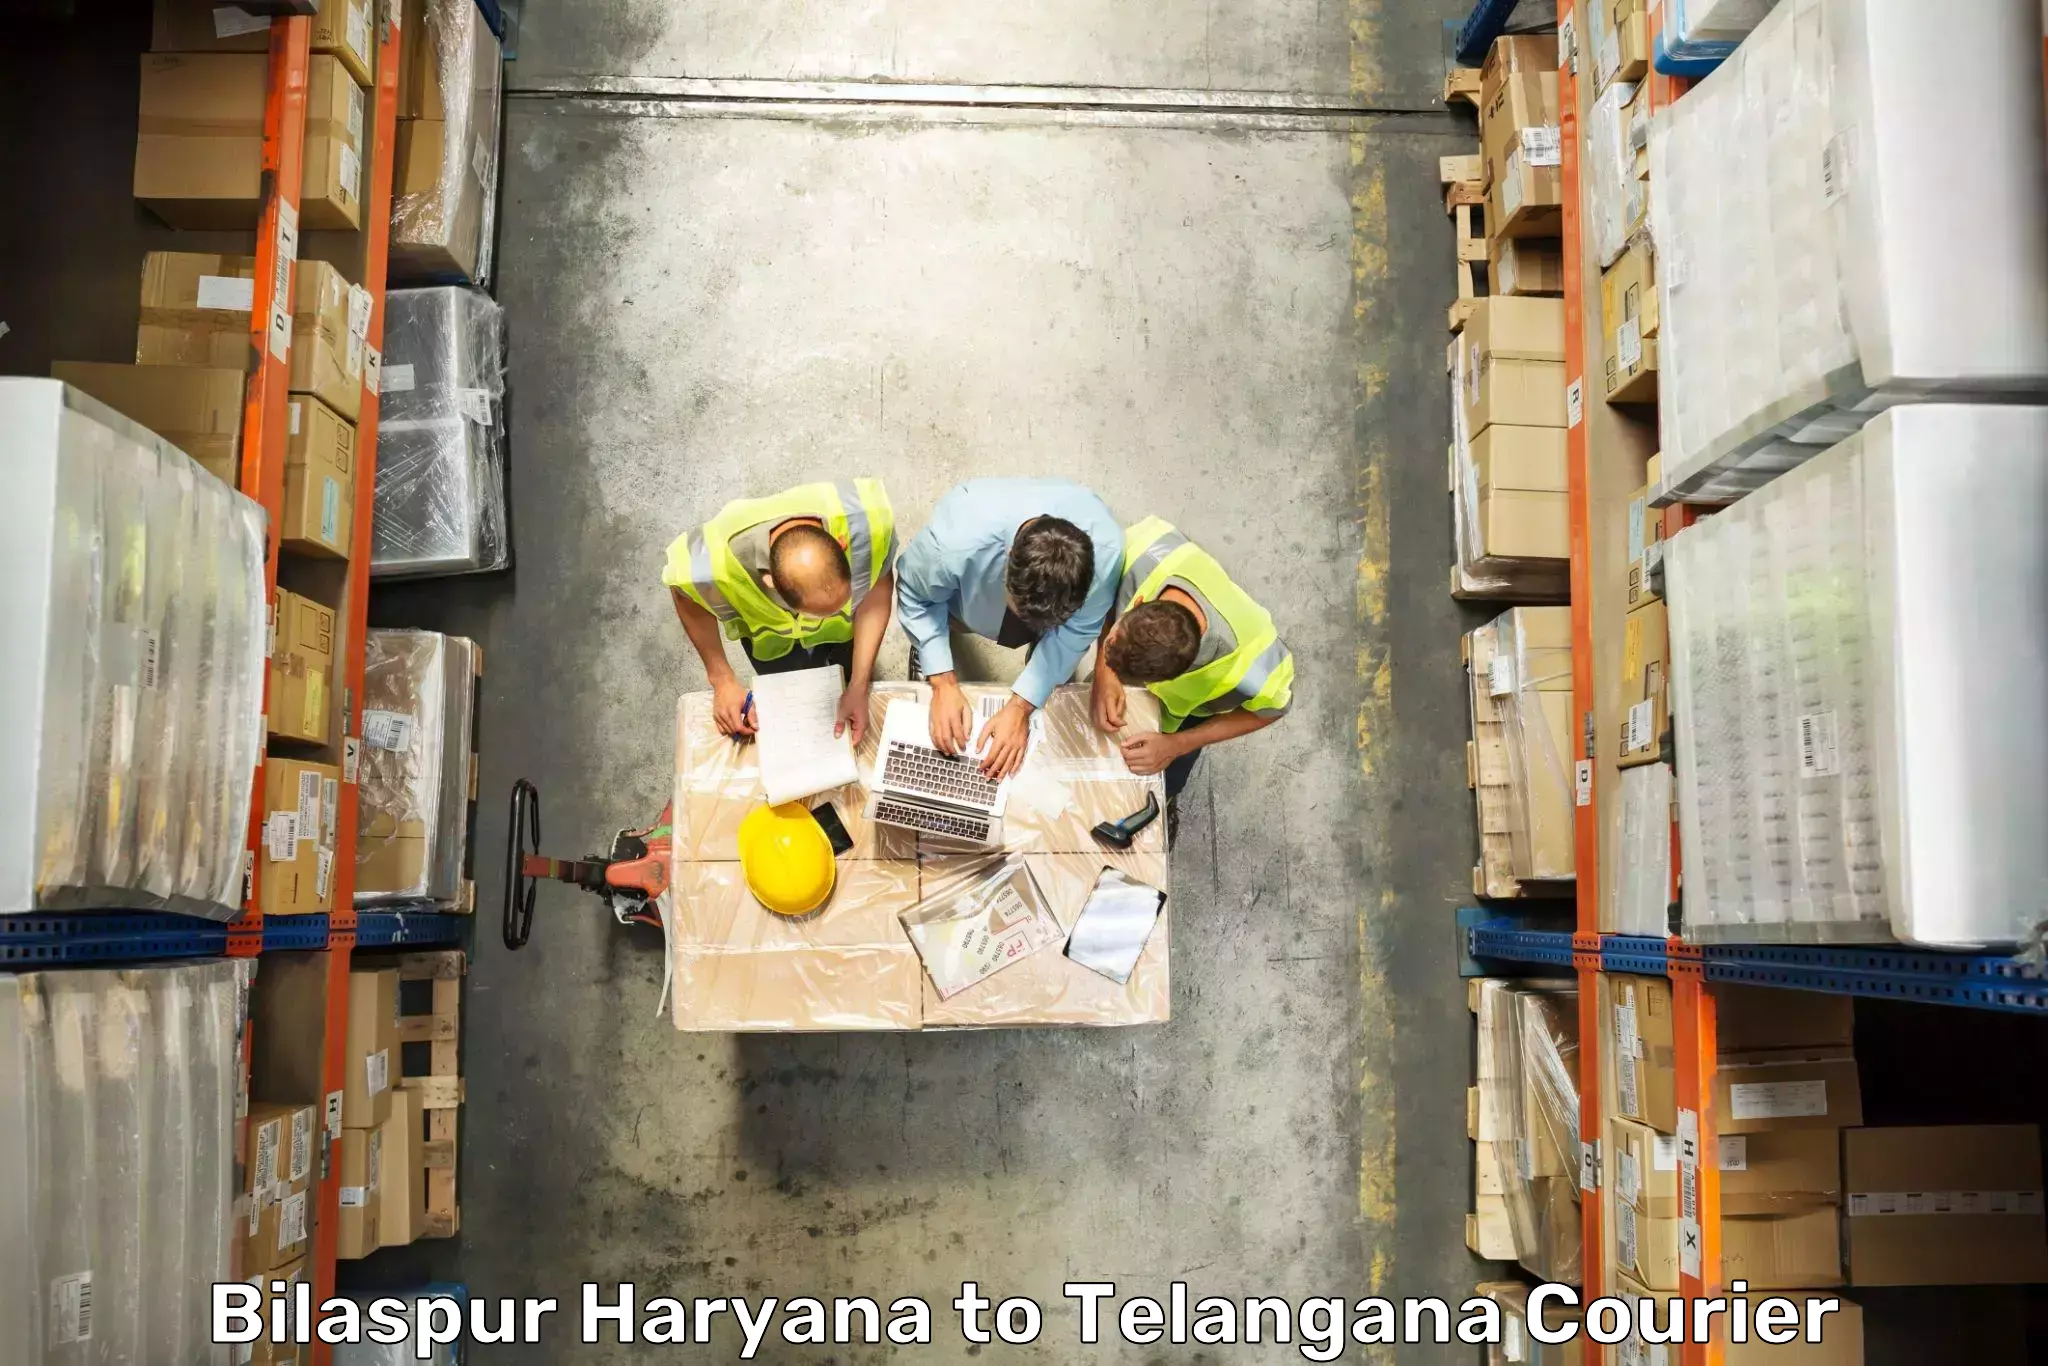 Baggage courier FAQs Bilaspur Haryana to Hanamkonda